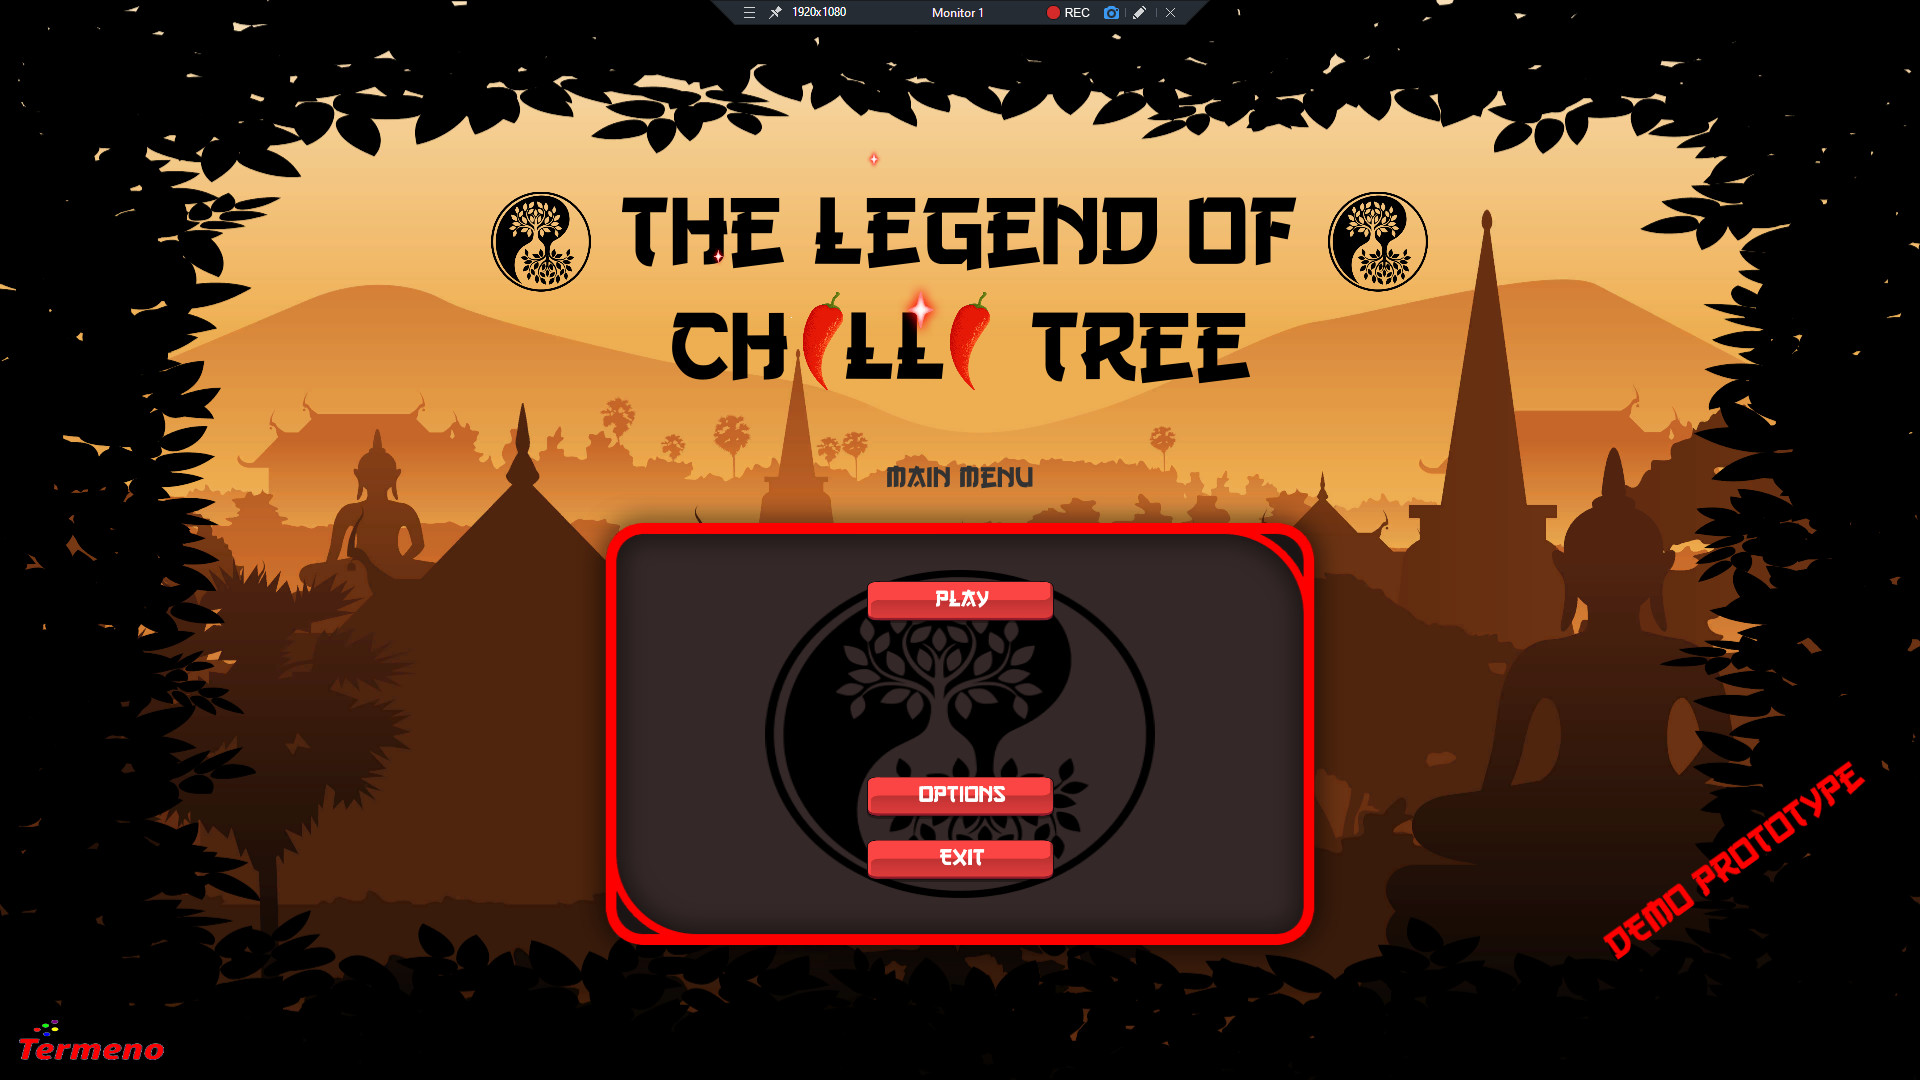 Legend of Chilli Tree Steam CD Key 0.69 $